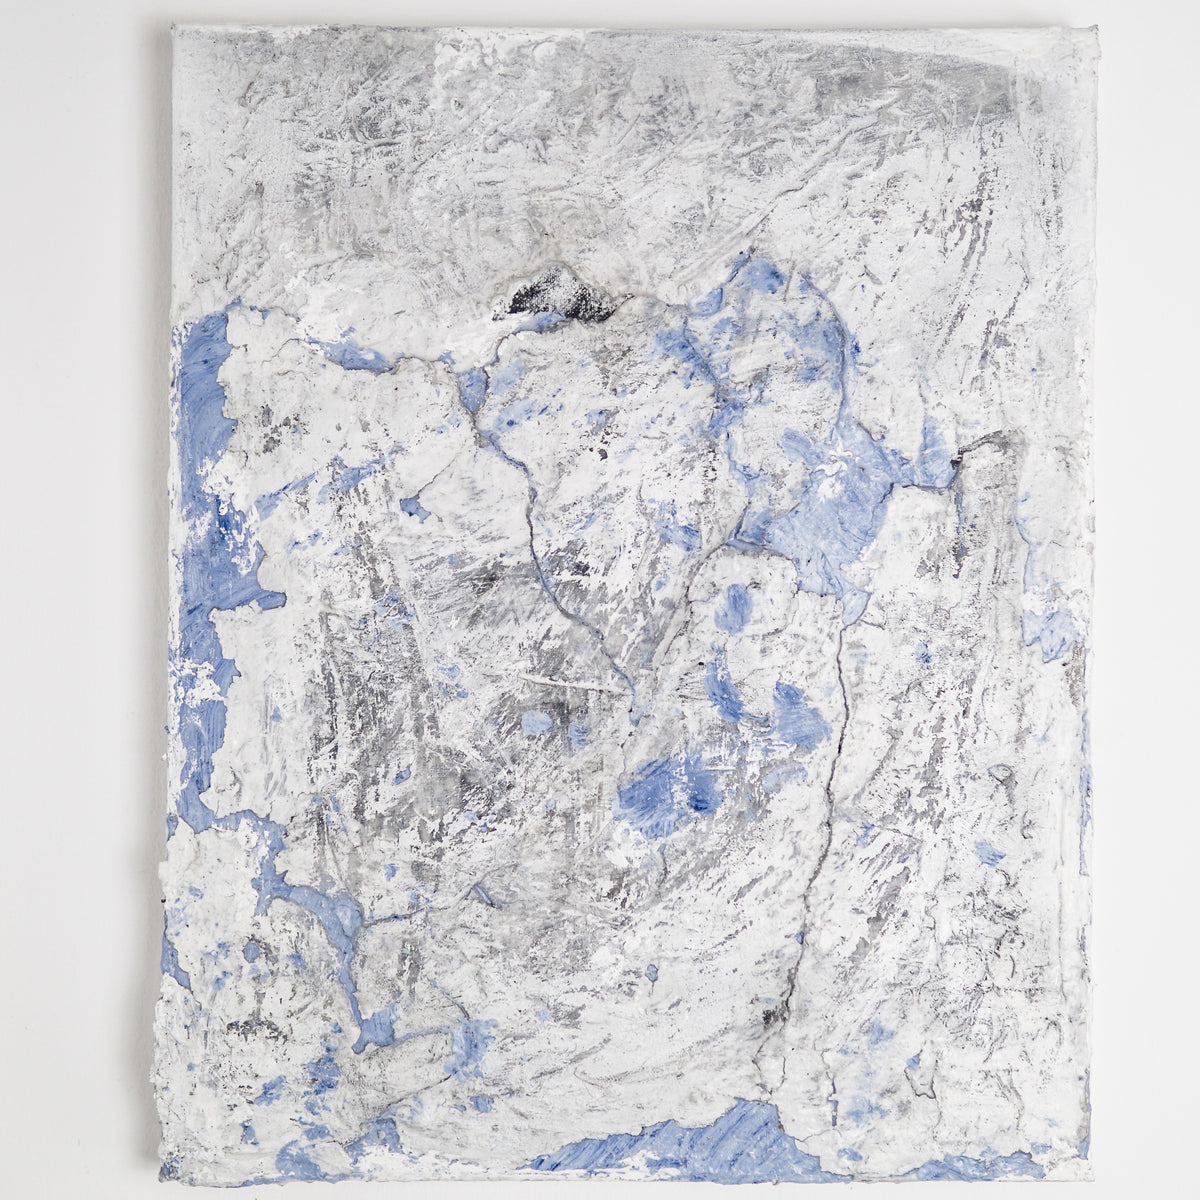 Ana Moraes | sem título,2021 | 50 x 40 cm | Spray, pastel de óleo, cimento, silicone, gesso acrílico, pigmento e cola branca sobre tela